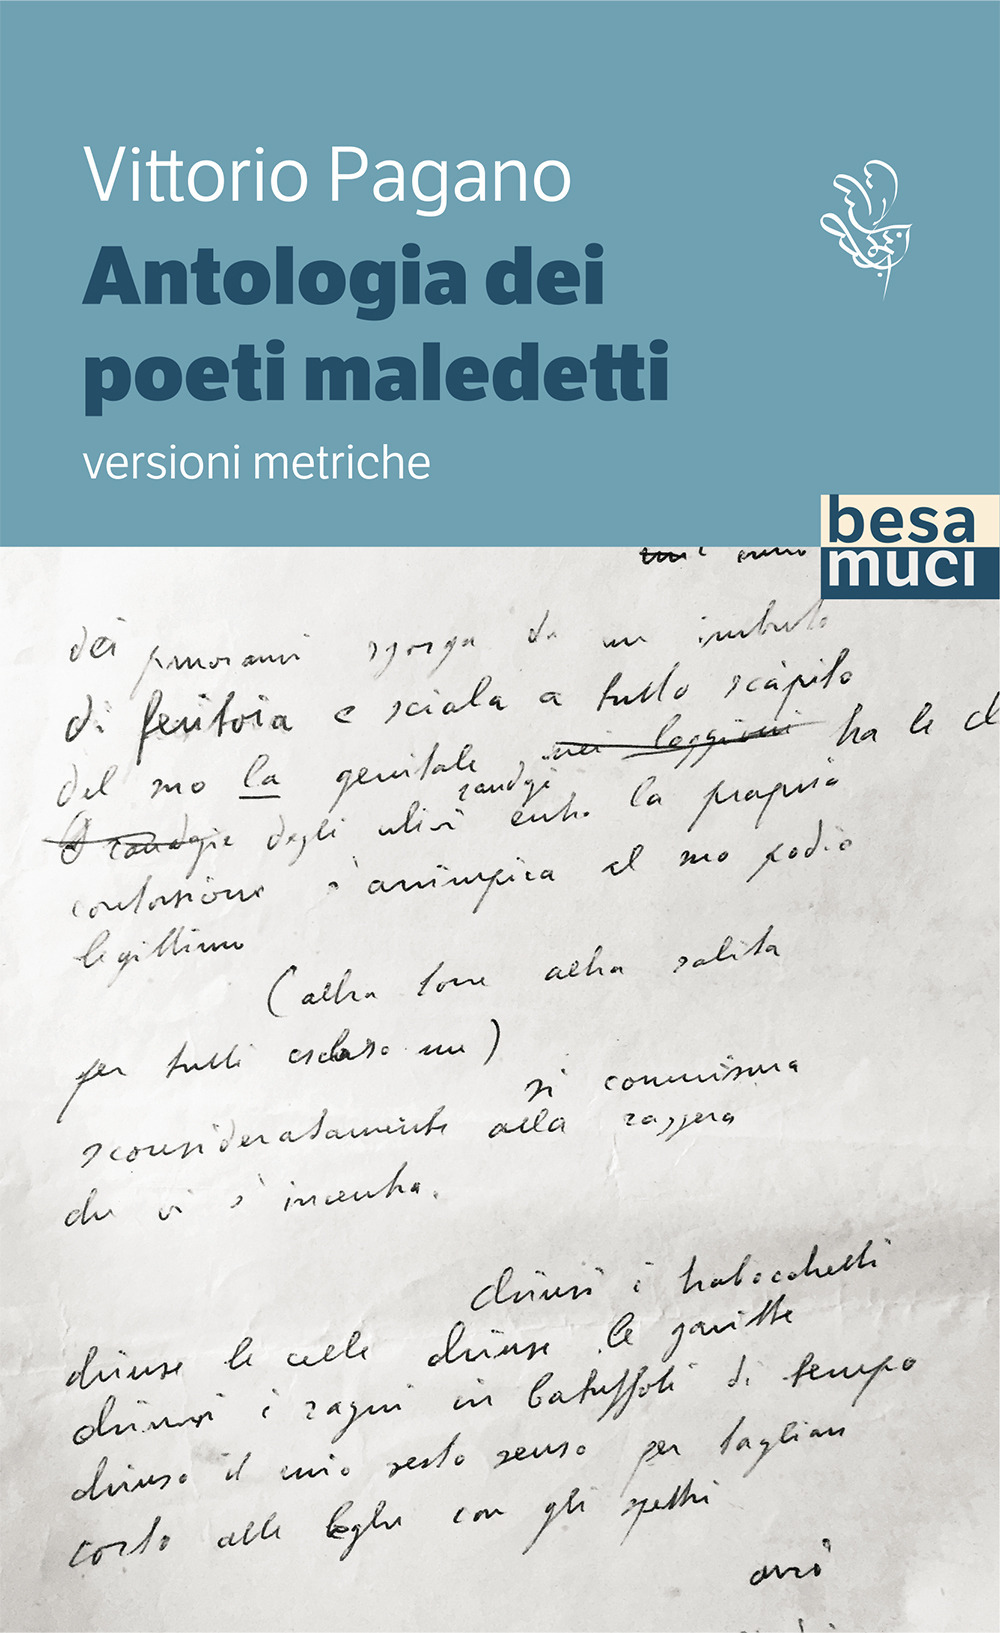 Image of Antologia dei poeti maledetti. Versioni metriche